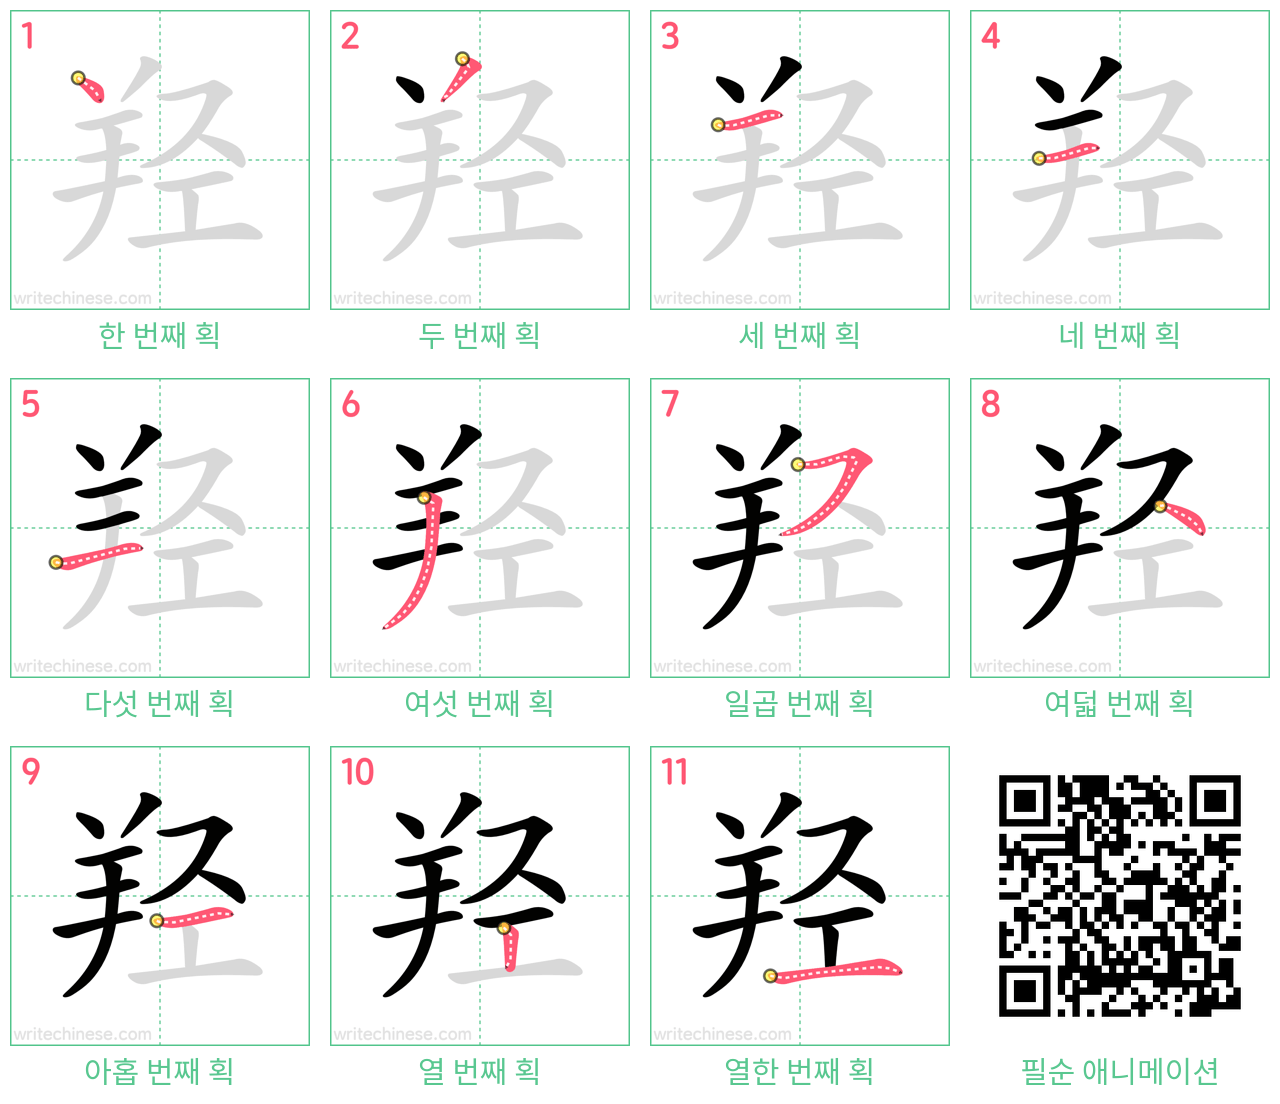 羟 step-by-step stroke order diagrams